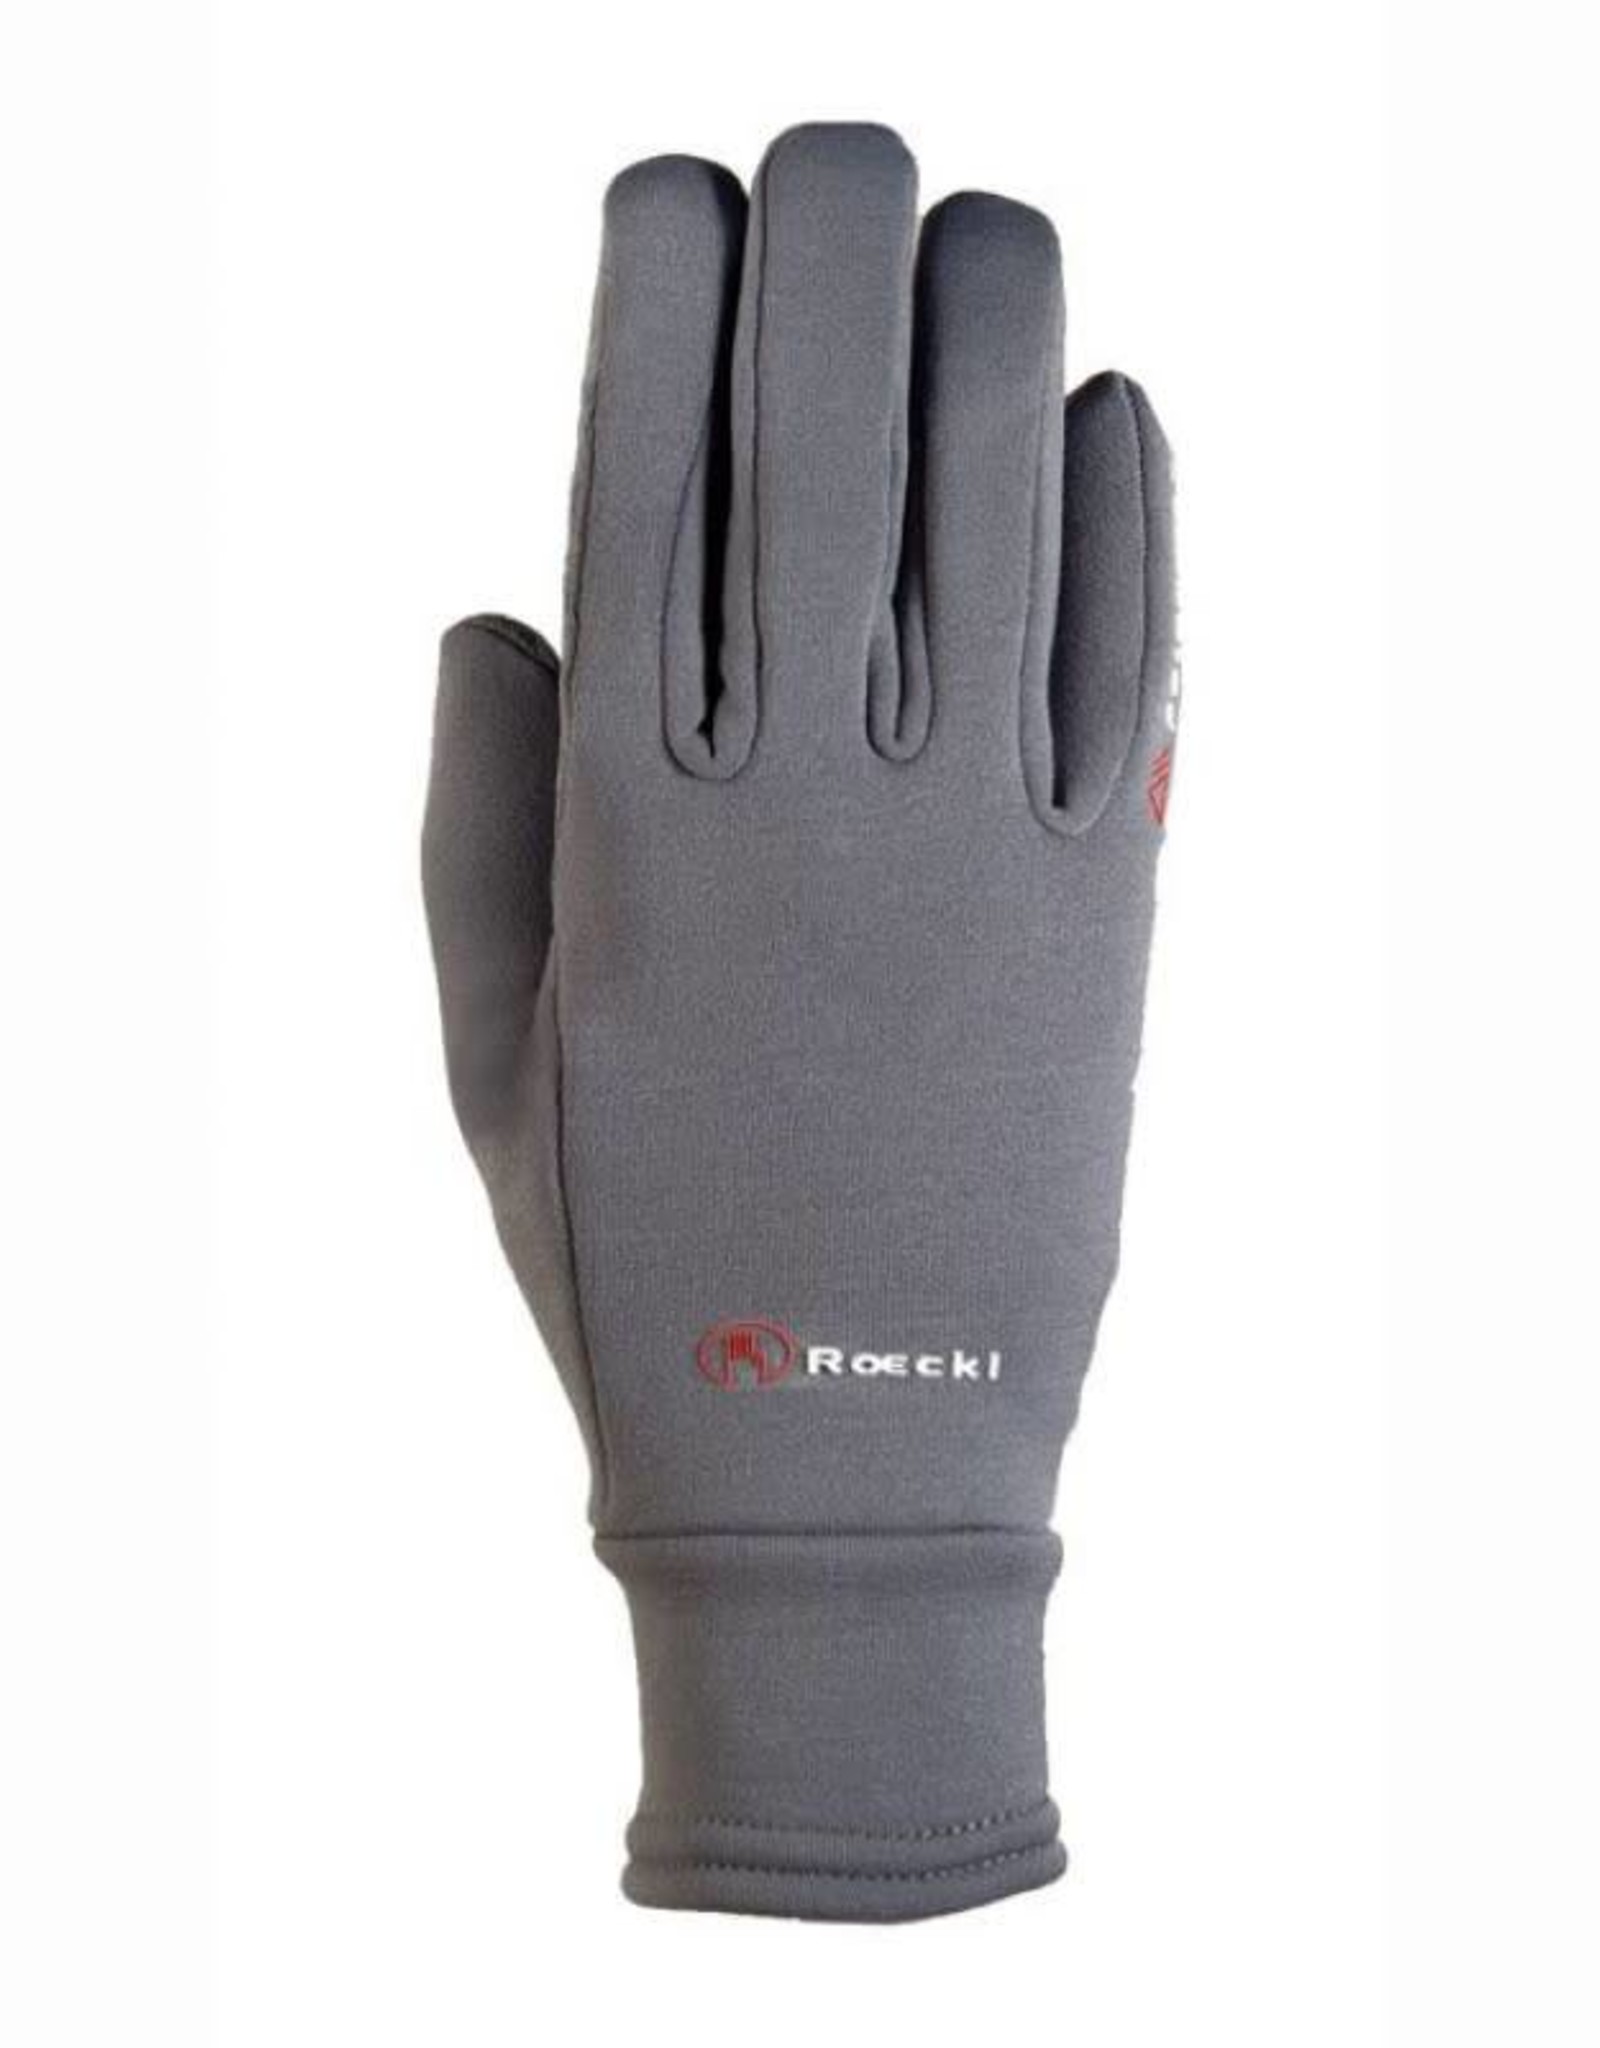 Roeckl Roeckl Weldon Winter Gloves